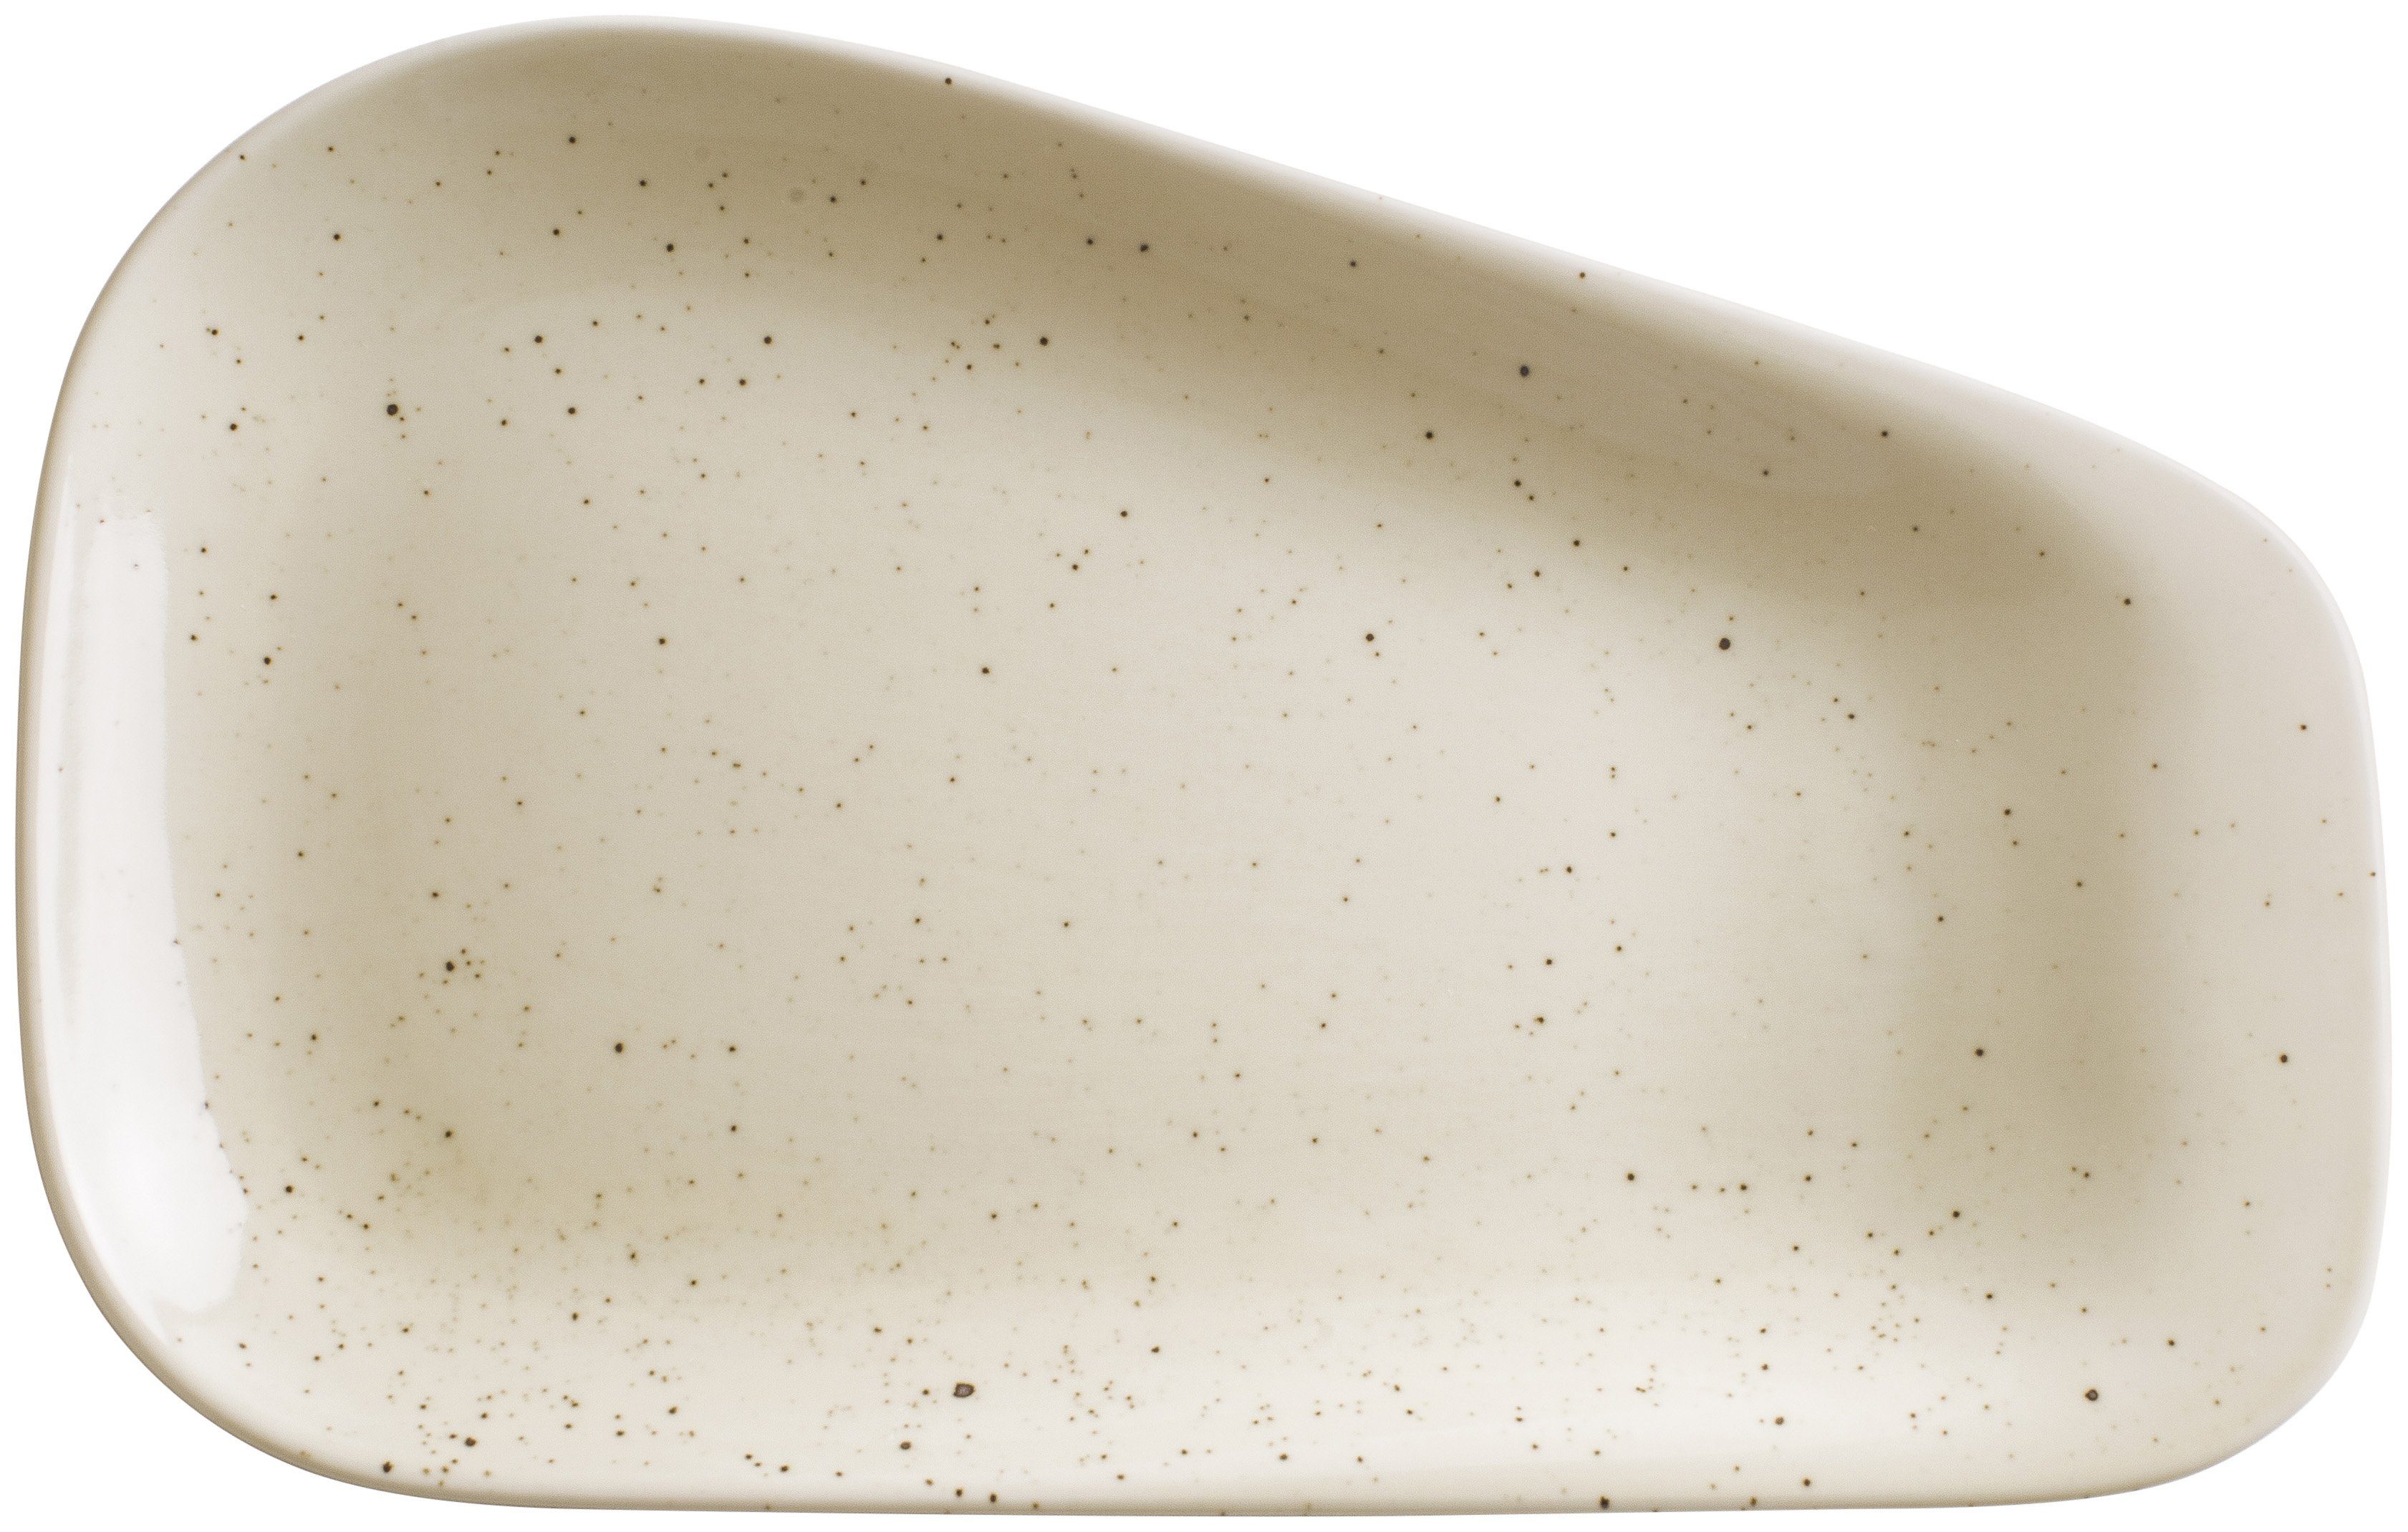 Kahla Servierplatte 27 cotton Germany Handglasiert, in Porzellan, Homestyle cm, natural Made